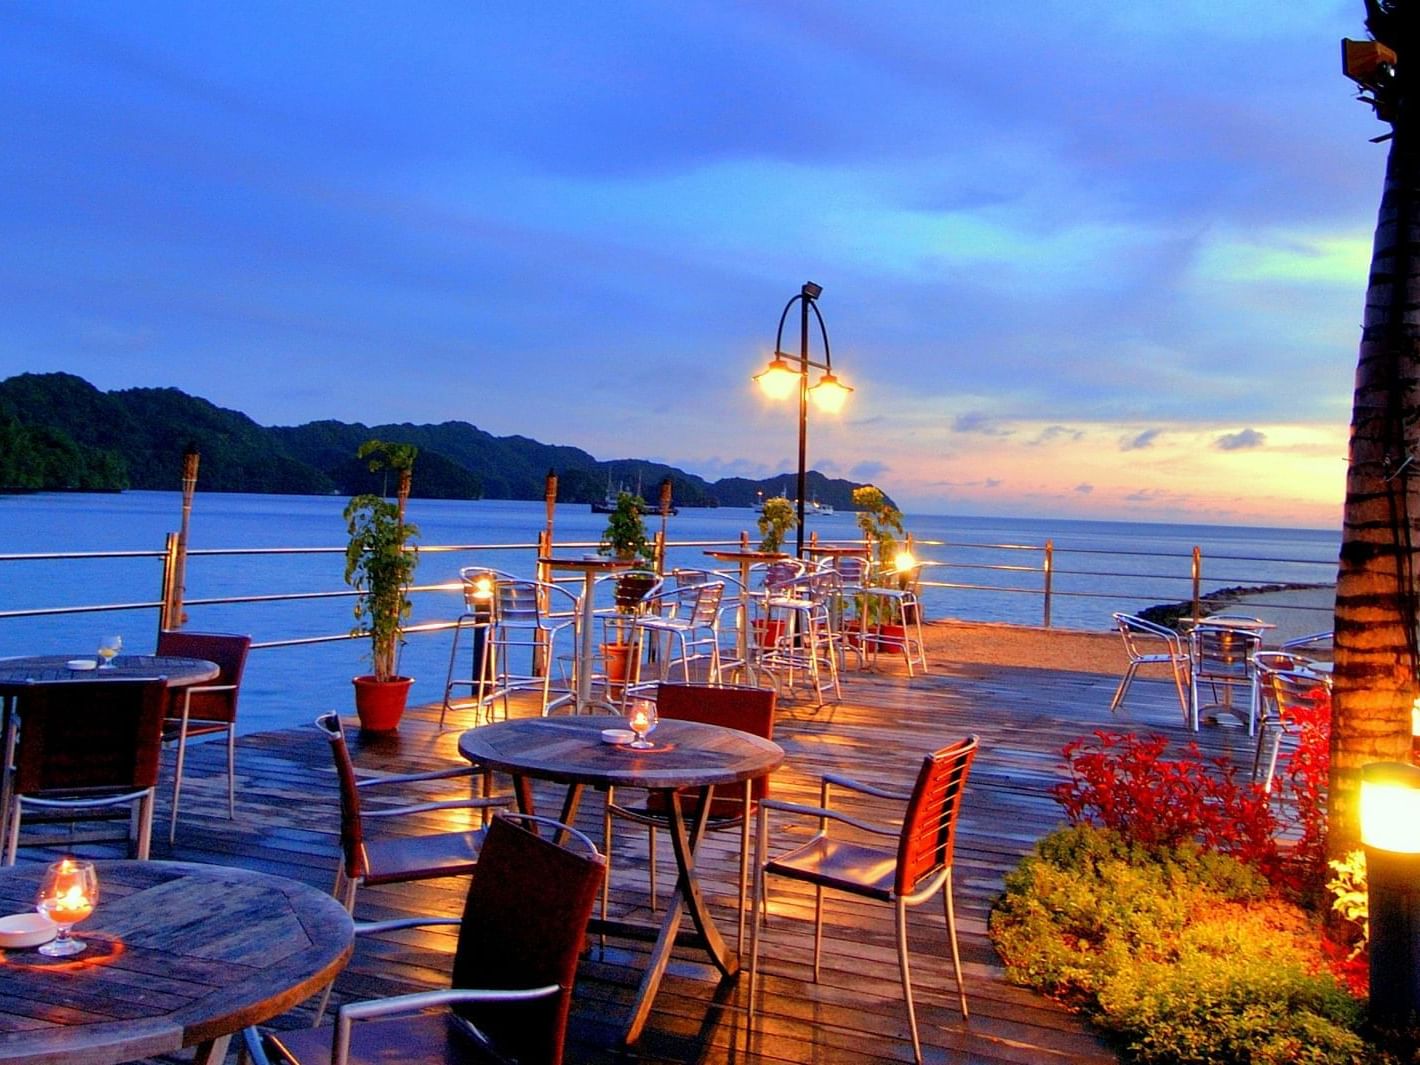 Outdoor dining area in Breeze Bar at Palau Royal Resort at dawn